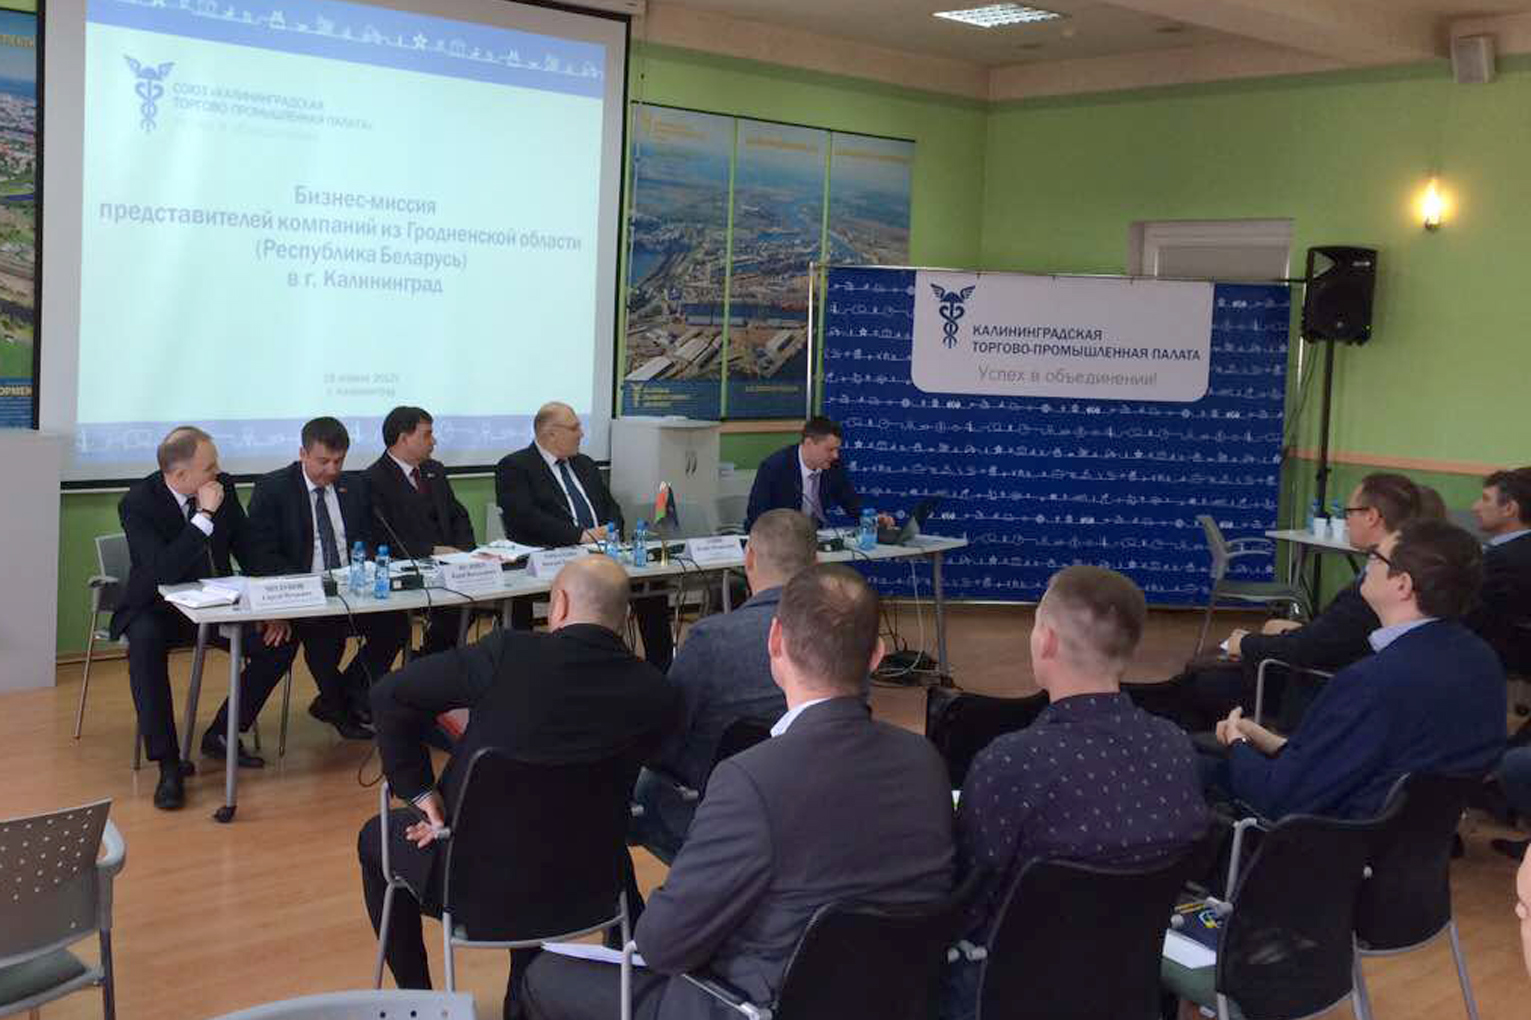 Деловой визит делегации Гродненской области в Калининград